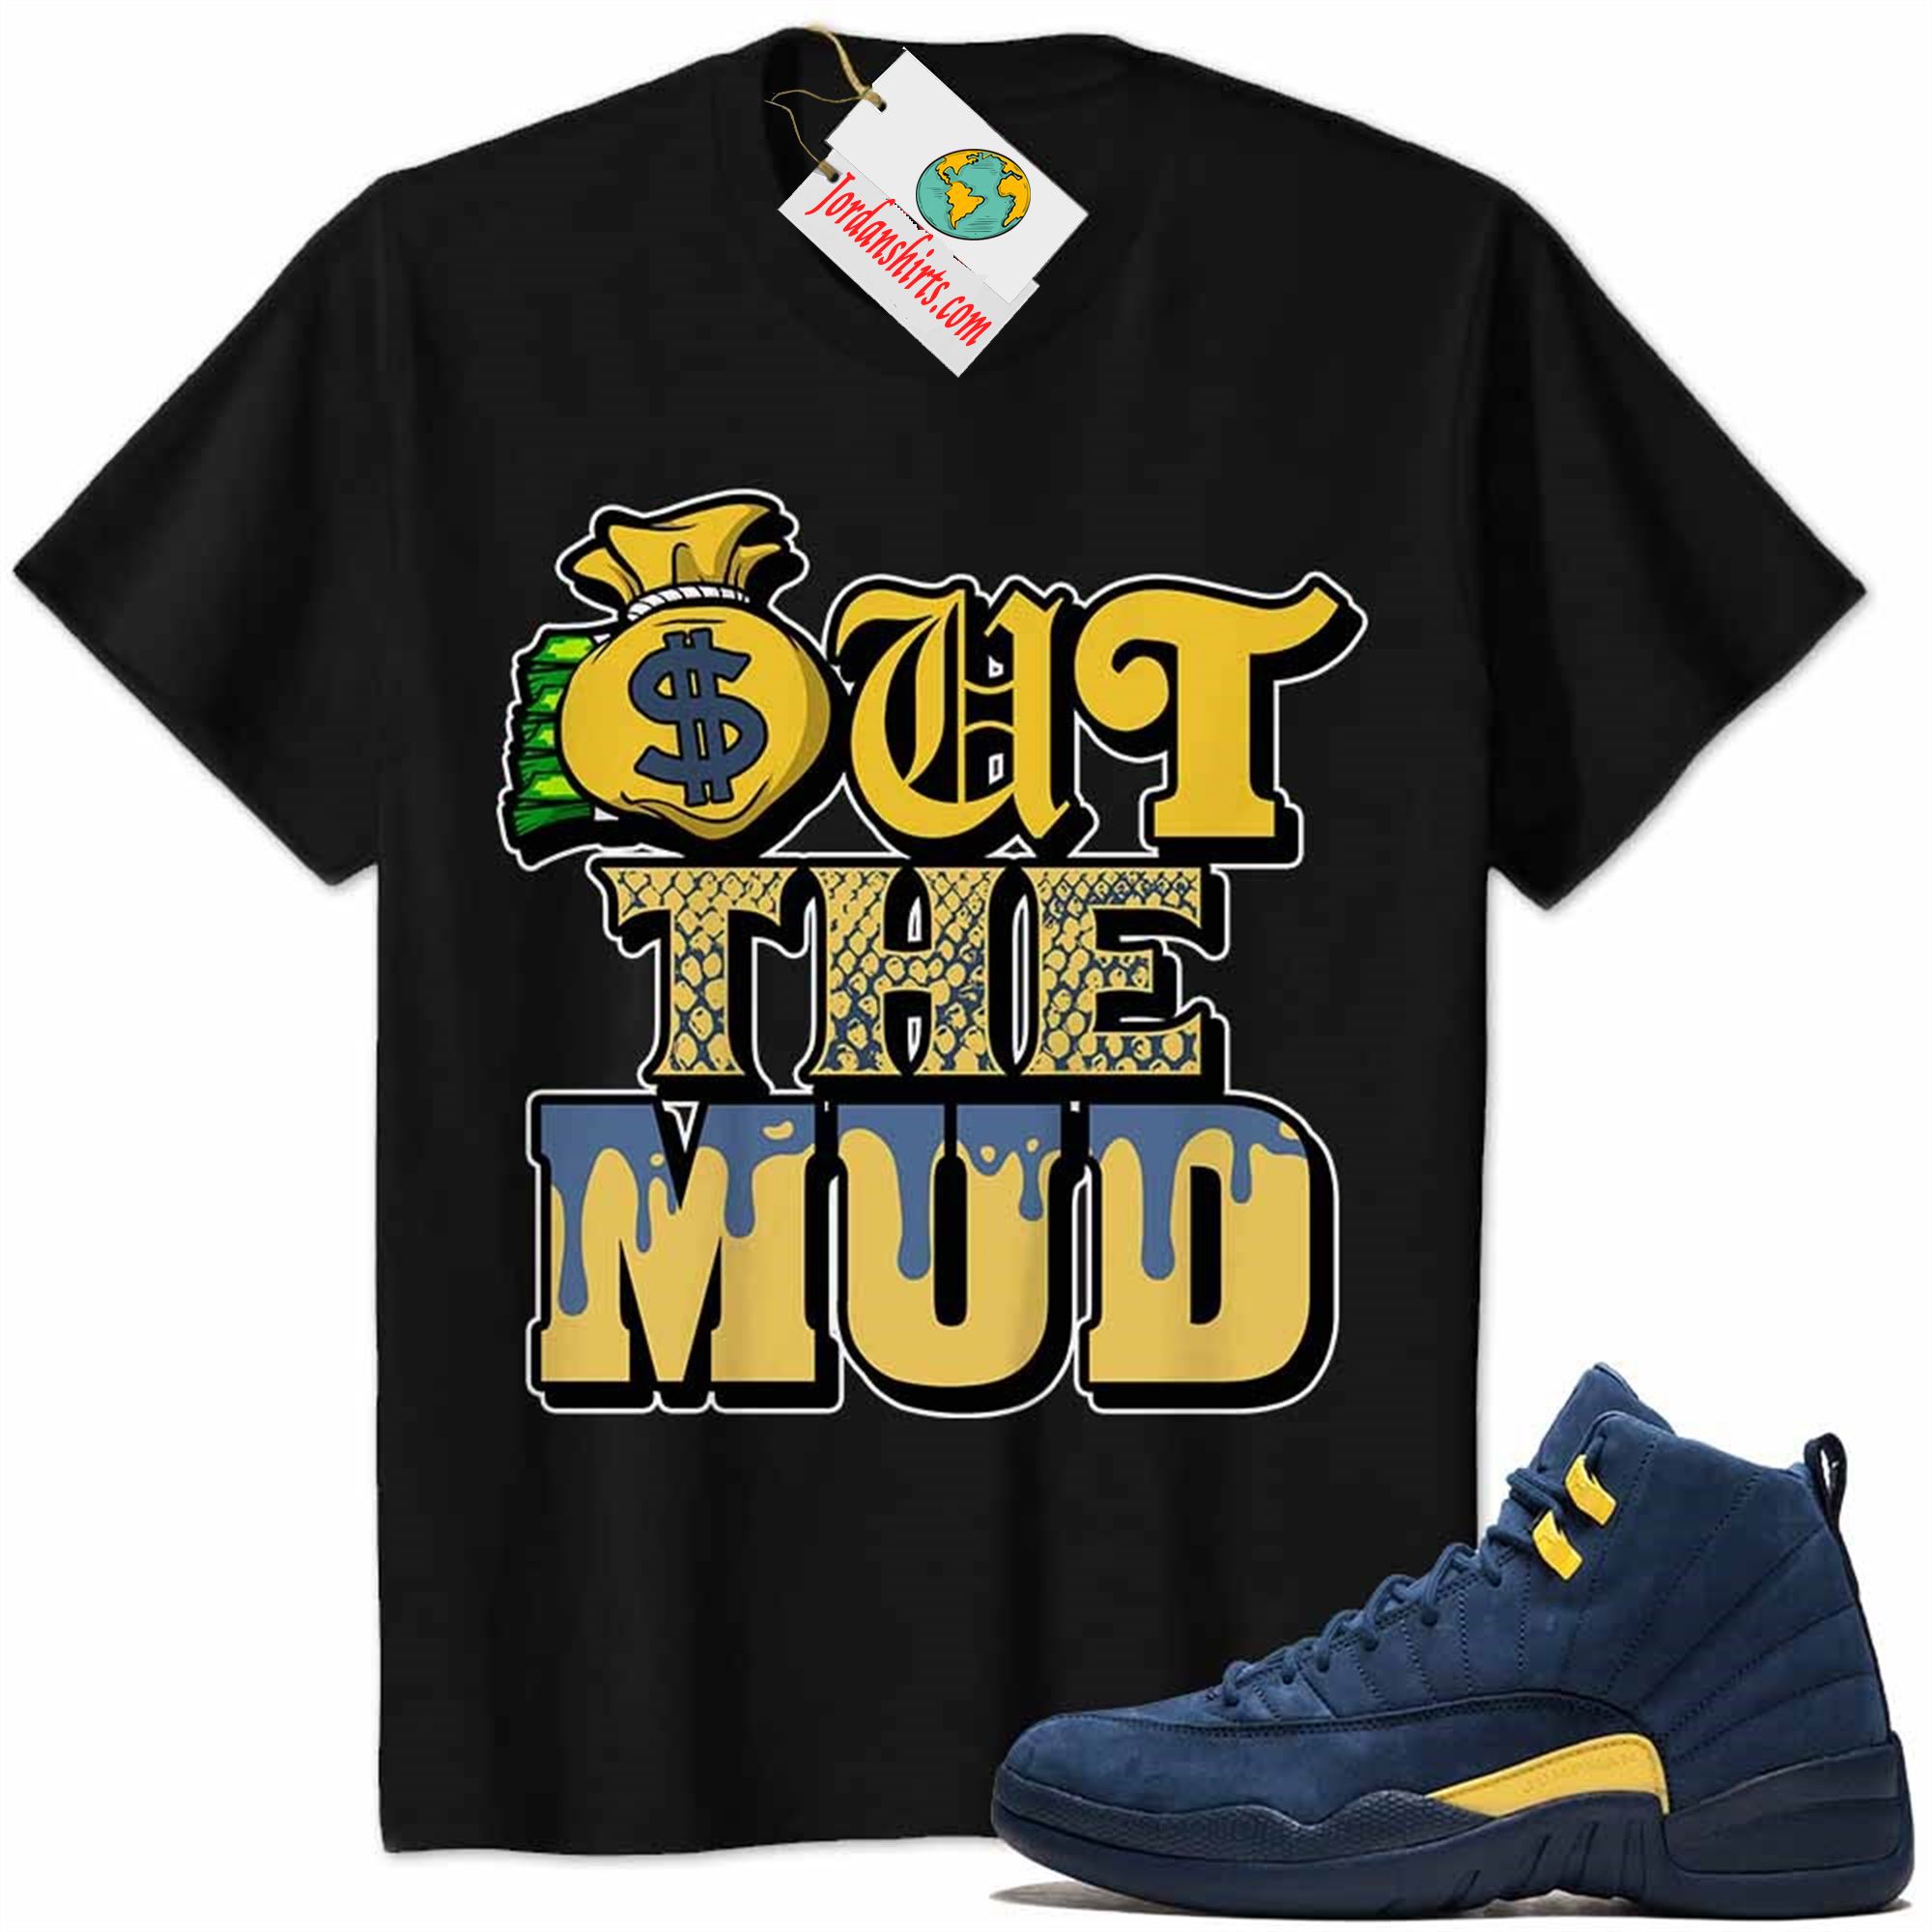 Jordan 12 Shirt, Jordan 12 Michigan Shirt Out The Mud Money Bag Black Size Up To 5xl